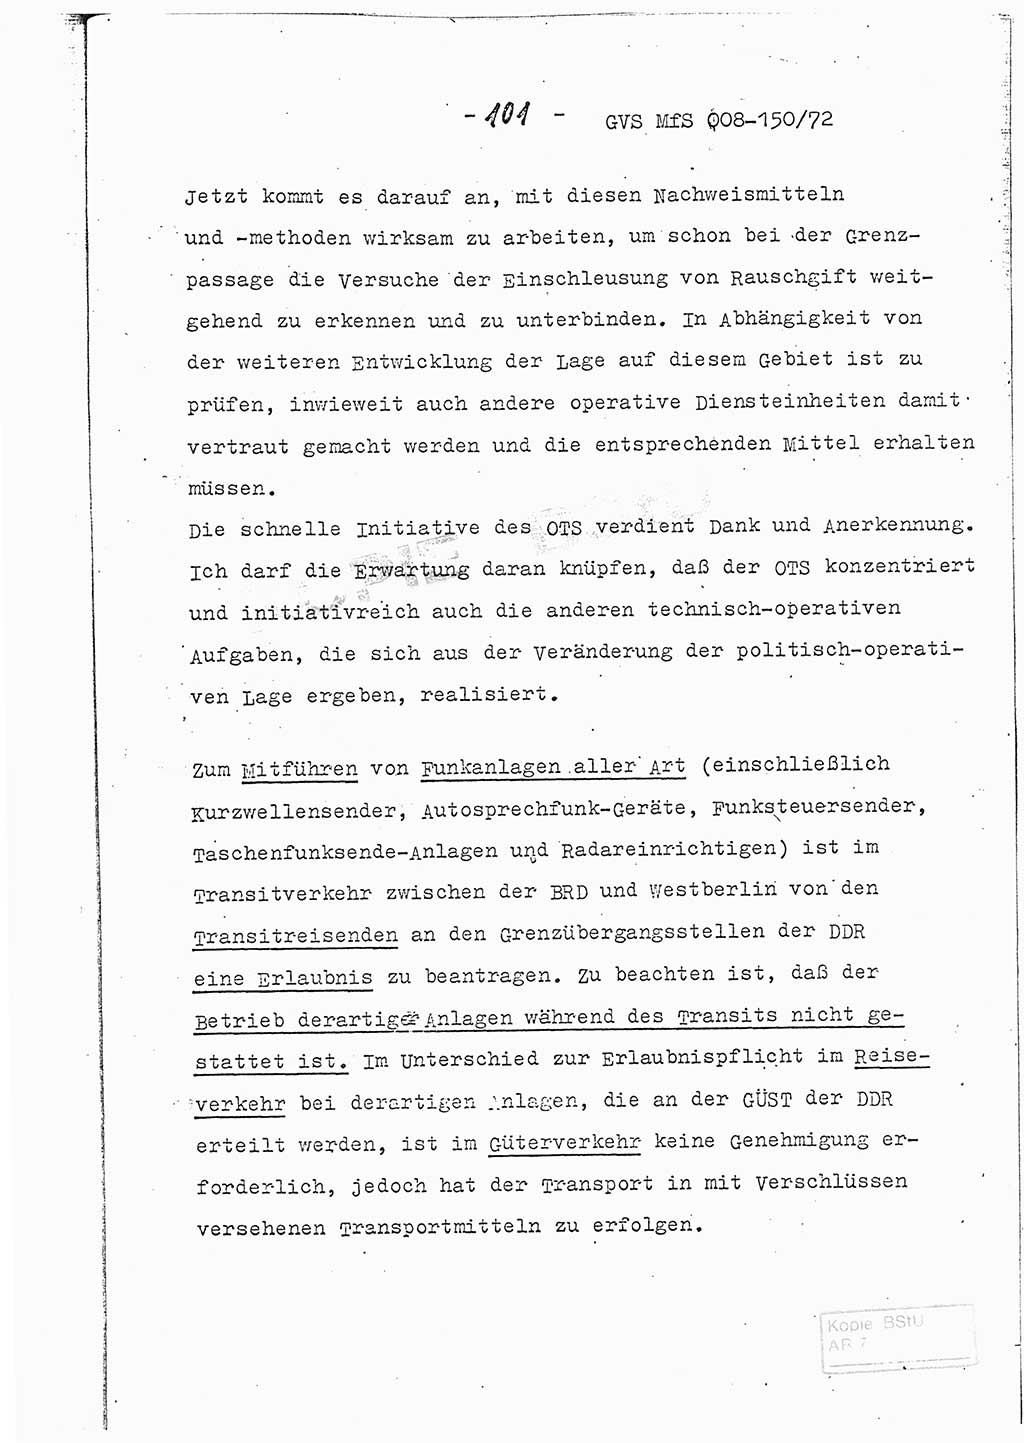 Referat (Entwurf) des Genossen Minister (Generaloberst Erich Mielke) auf der Dienstkonferenz 1972, Ministerium für Staatssicherheit (MfS) [Deutsche Demokratische Republik (DDR)], Der Minister, Geheime Verschlußsache (GVS) 008-150/72, Berlin 25.2.1972, Seite 101 (Ref. Entw. DK MfS DDR Min. GVS 008-150/72 1972, S. 101)